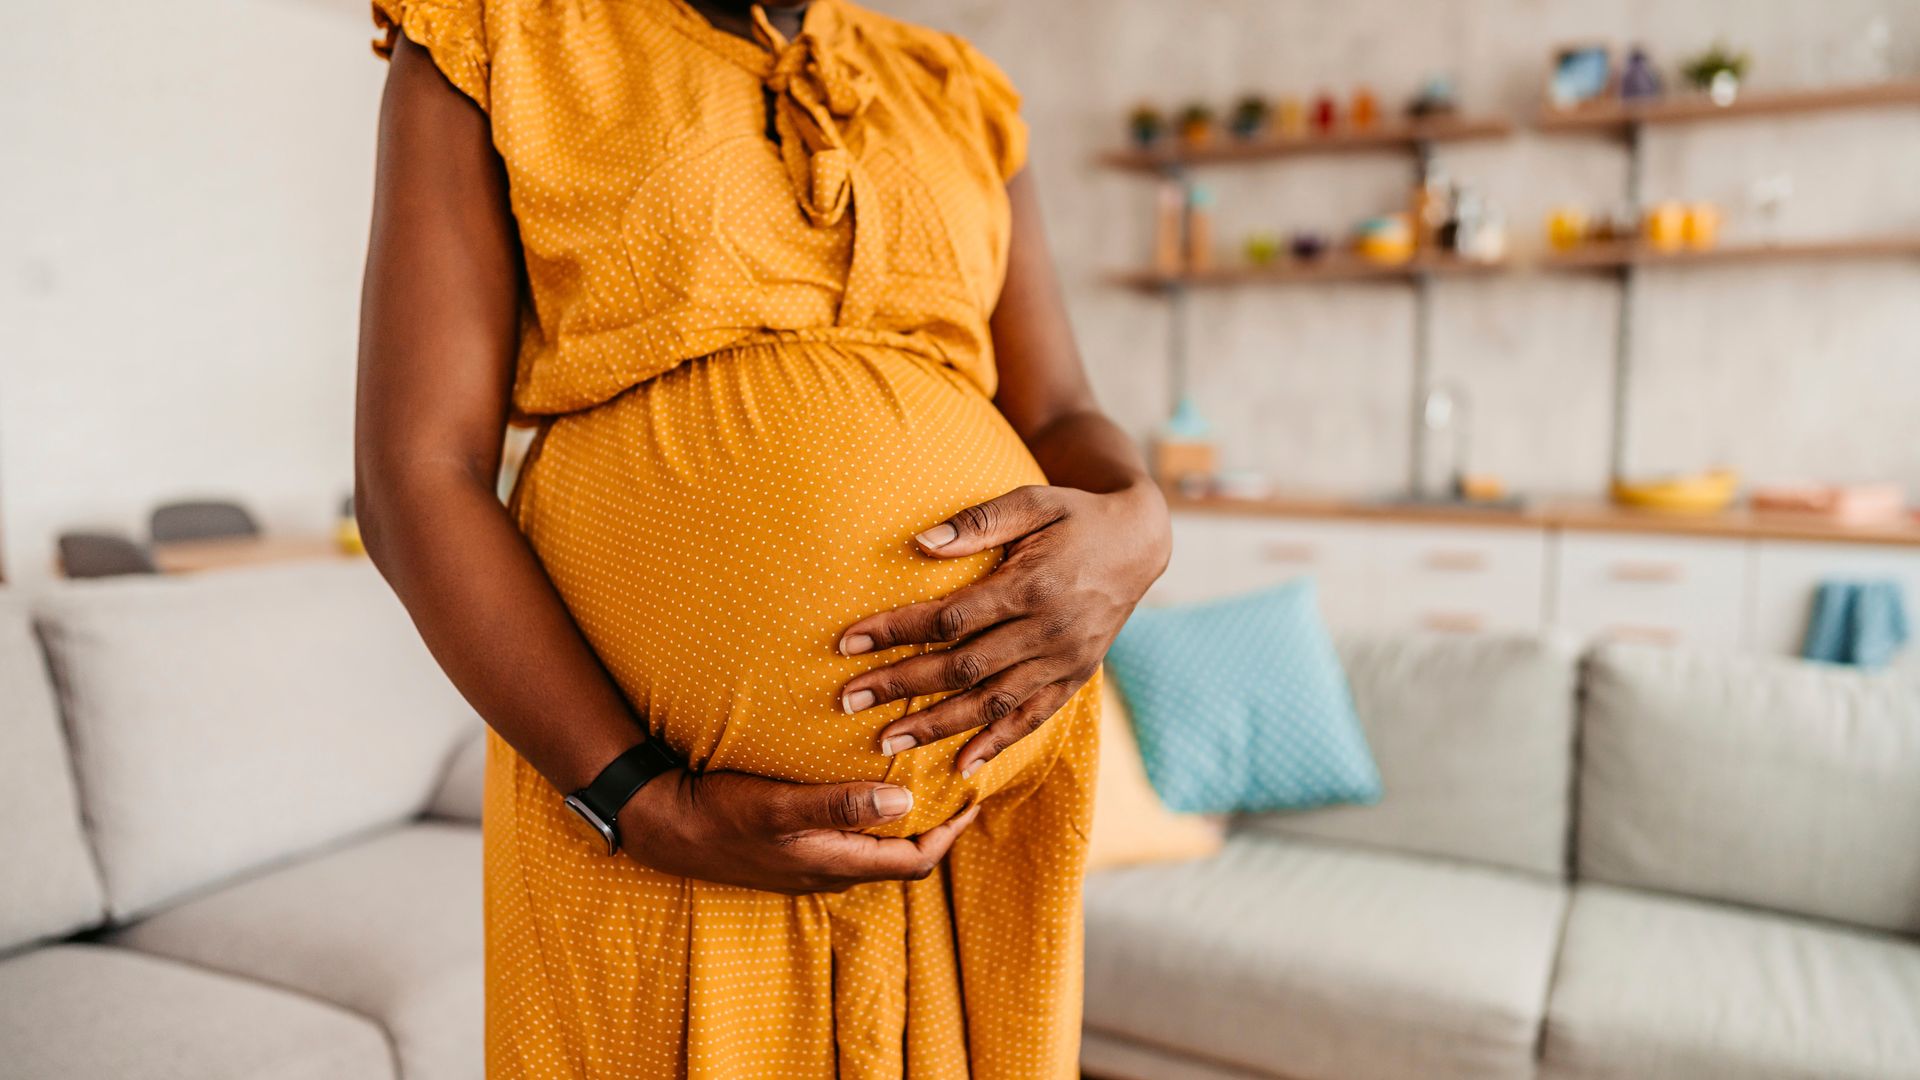 schwangerschaft: biologisches alter steigt rasant - und sinkt nach der geburt